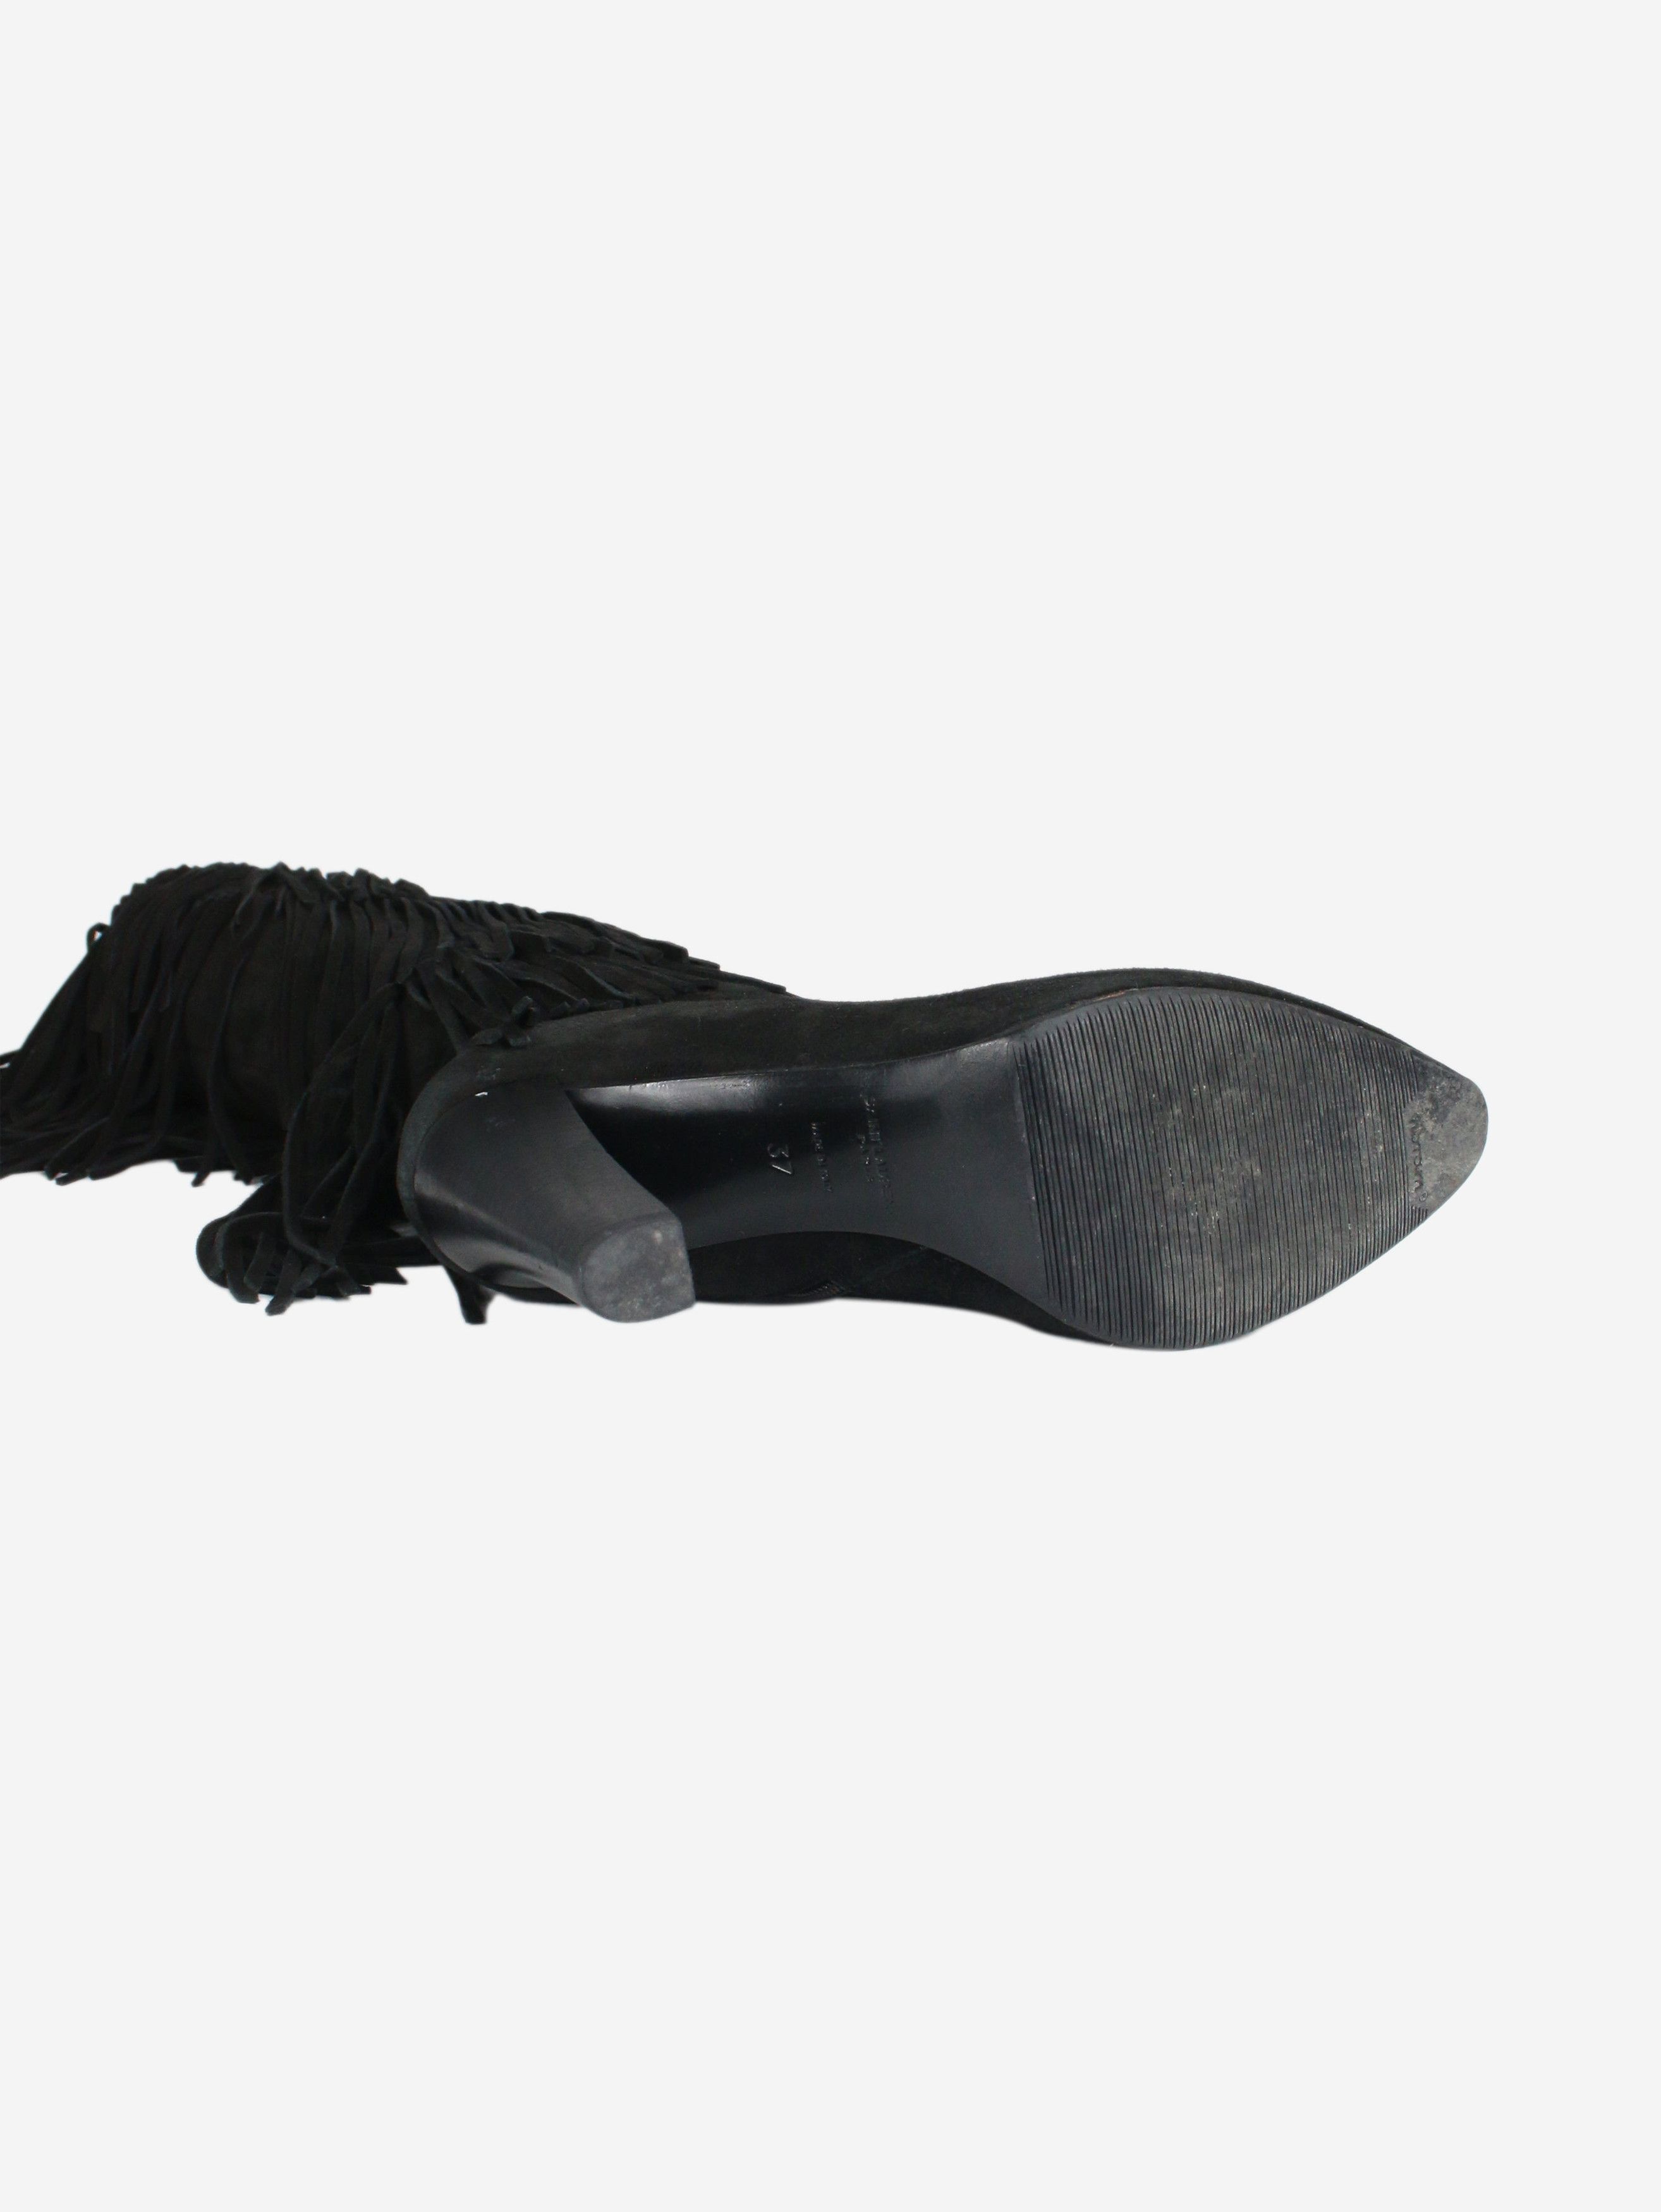 Saint Laurent Paris Black suede fringed boots - size EU 37 | Grailed